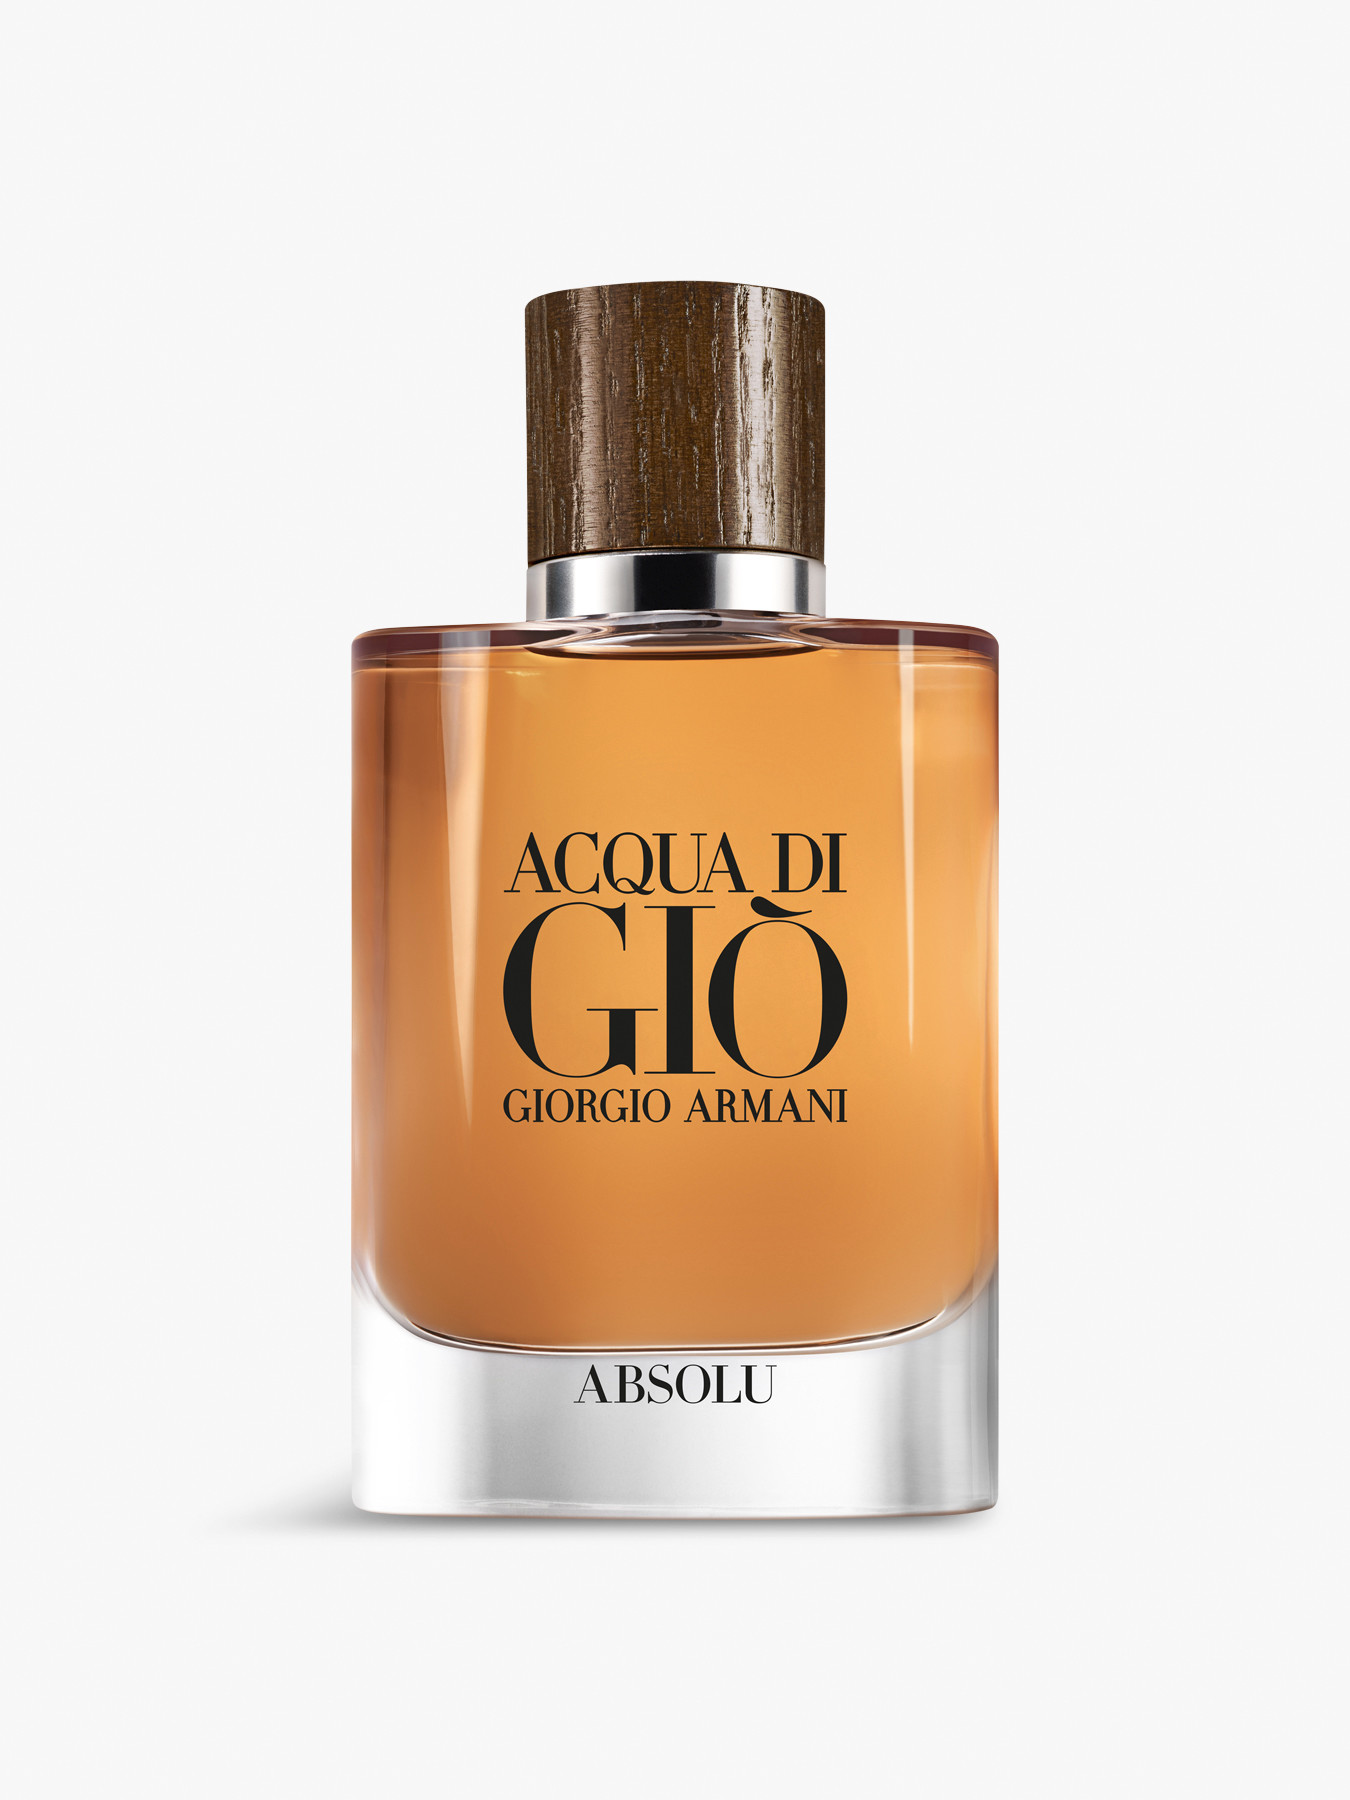 Giorgio Armani Acqua di Giò Absolu Eau de Parfum 75 ml | Men's Fragrances |  Fenwick